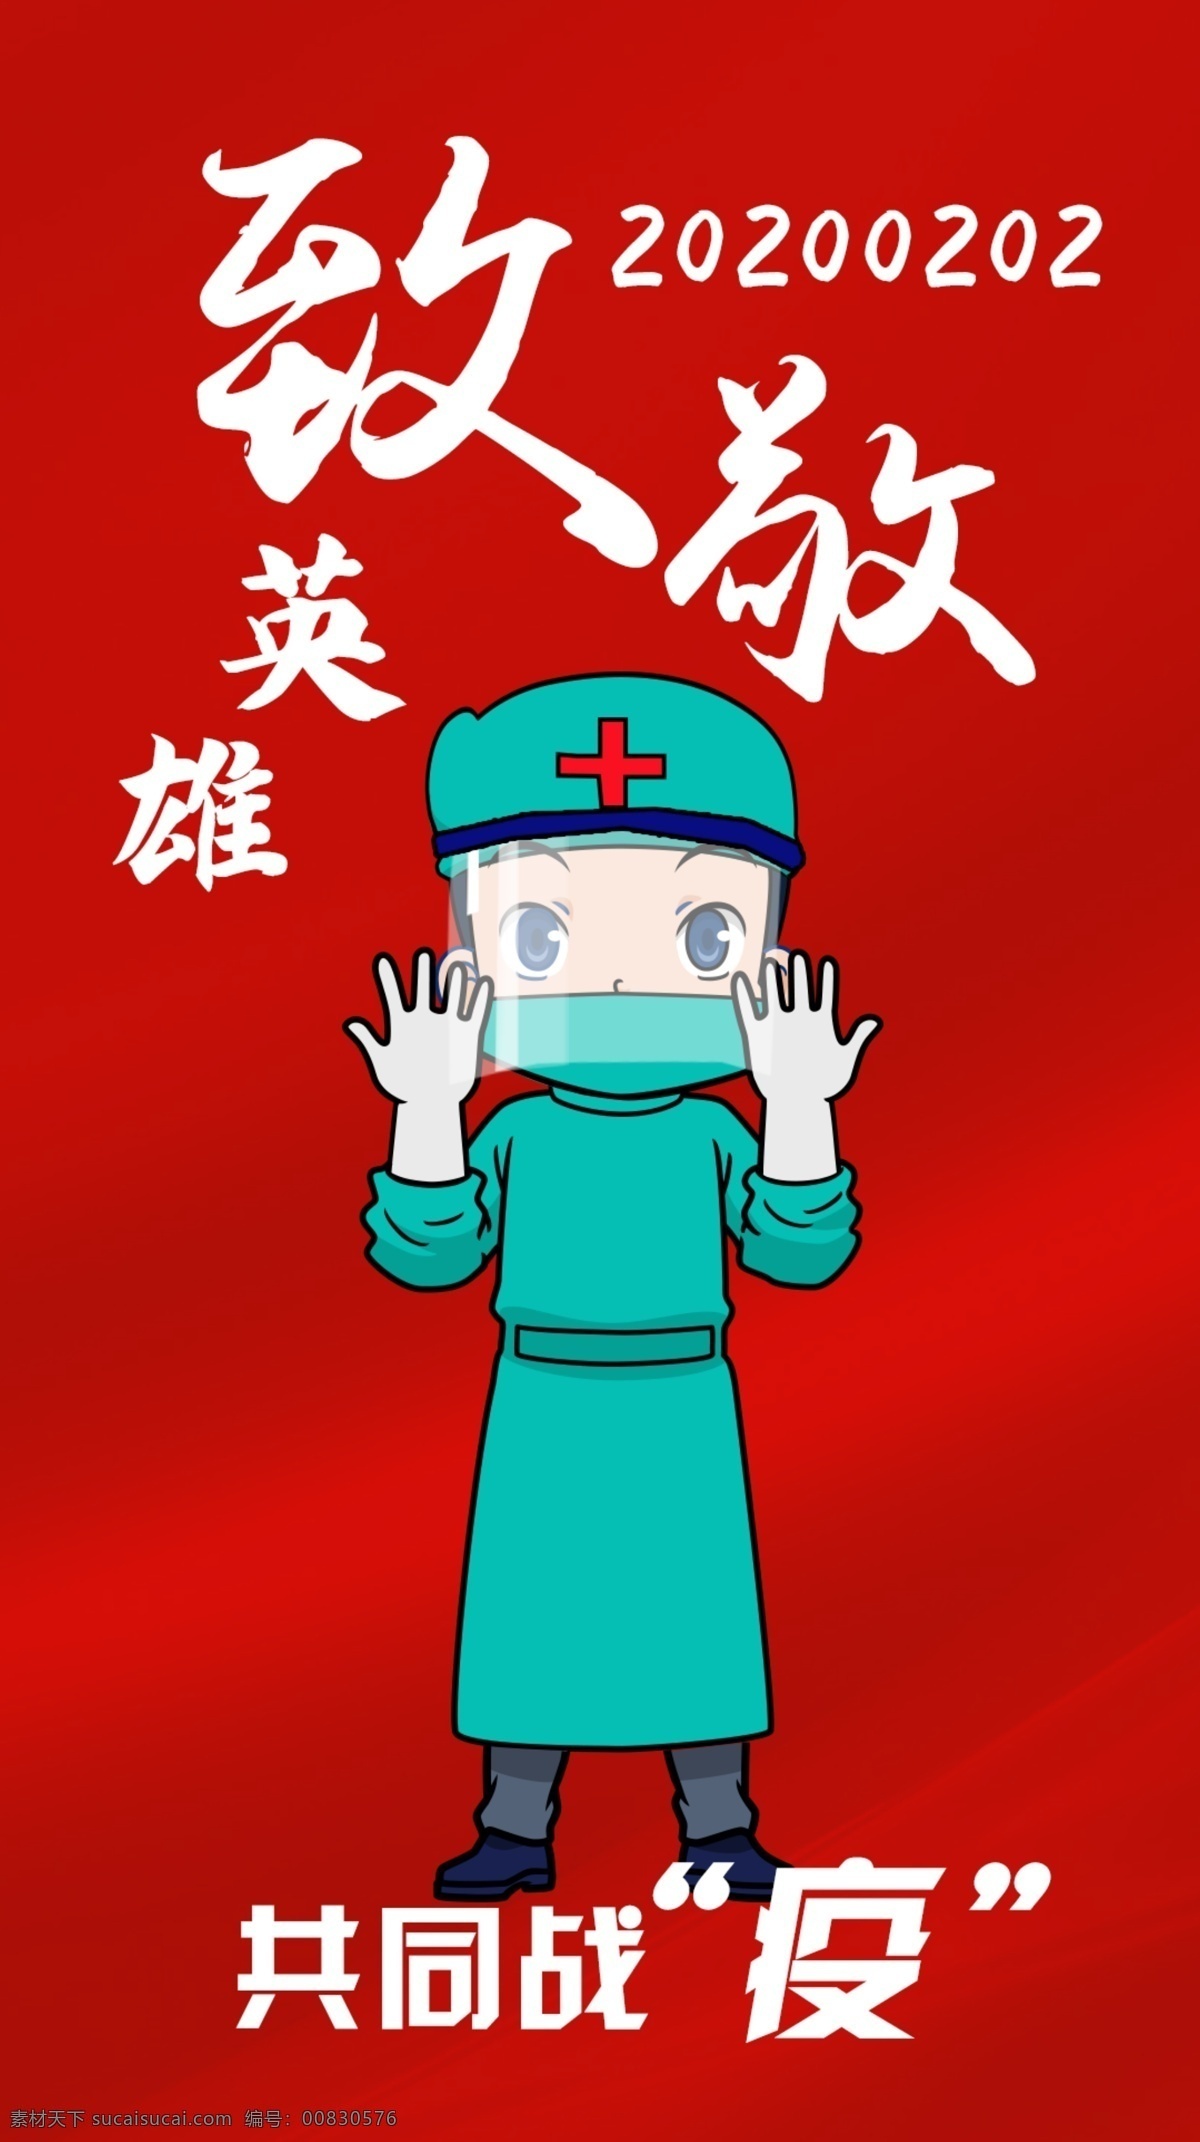 抗 疫 英雄 护士 抗疫 逆行者 共同抗疫 致敬英雄 抗疫护士医生 活动布置背景 动漫动画 动漫人物